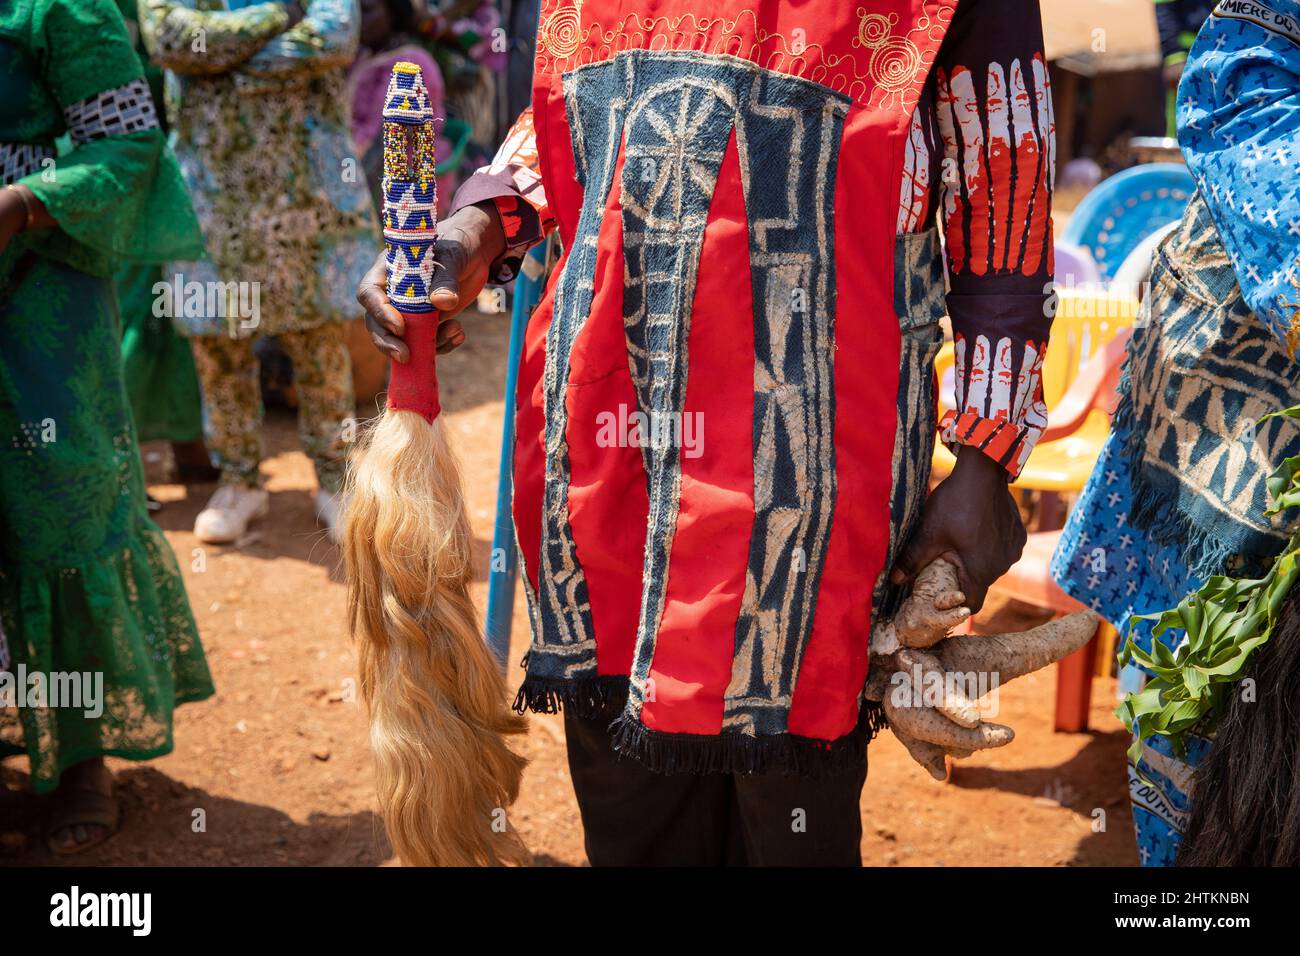 Nahaufnahme eines afrikanischen Kleides, das von einem Gentleman mit einem traditionellen dekorativen Pferdeschwanz und einer Knolle während einer afrikanischen Feier getragen wird Stockfoto